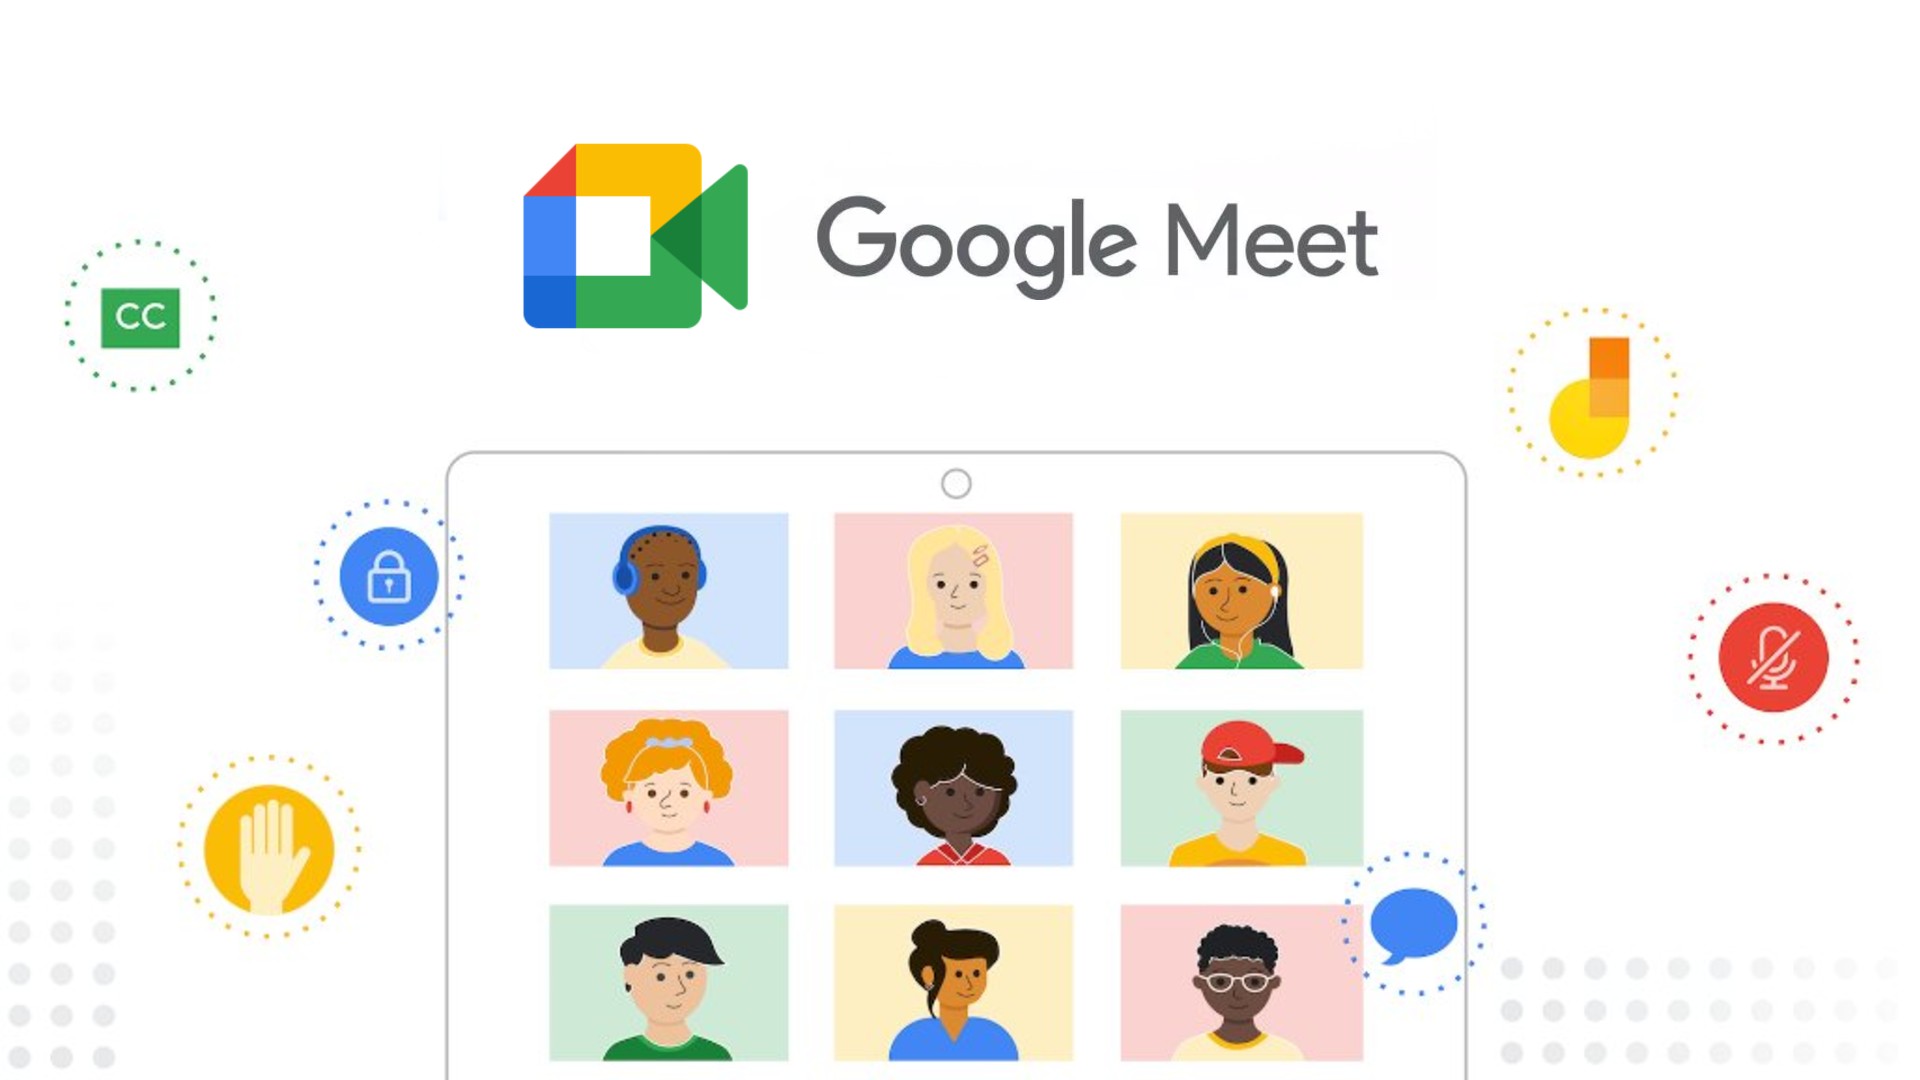 Google Meet es una herramienta para realizar reuniones virtuales de una forma muy sencilla. Está enfocada al ambiente profesional y sustituye a Google Hangouts, dentro de G-Suite, el paquete de aplicaciones de Google para profesionales. 